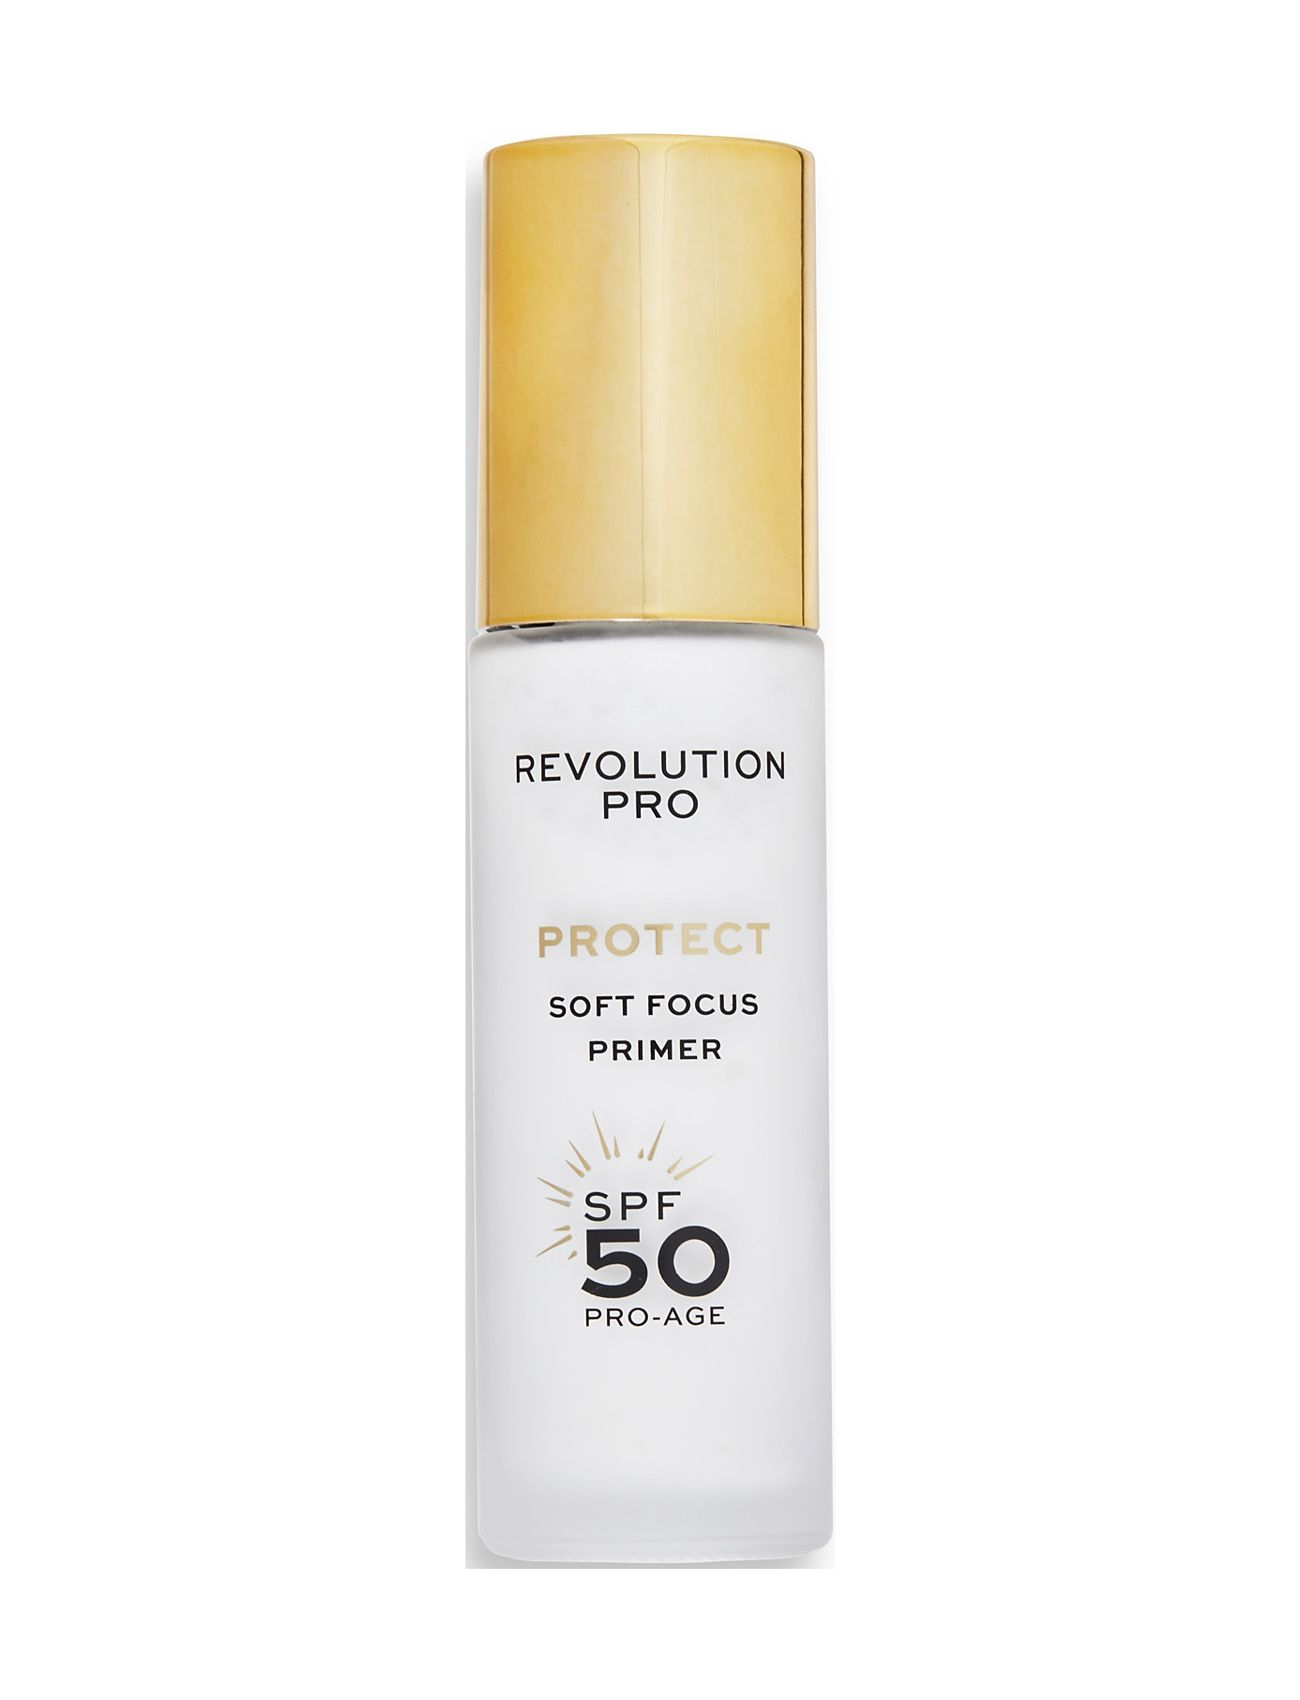 Revolution Pro Protect Soft Focus Primer Spf 50 Makeup Primer Smink Revolution PRO